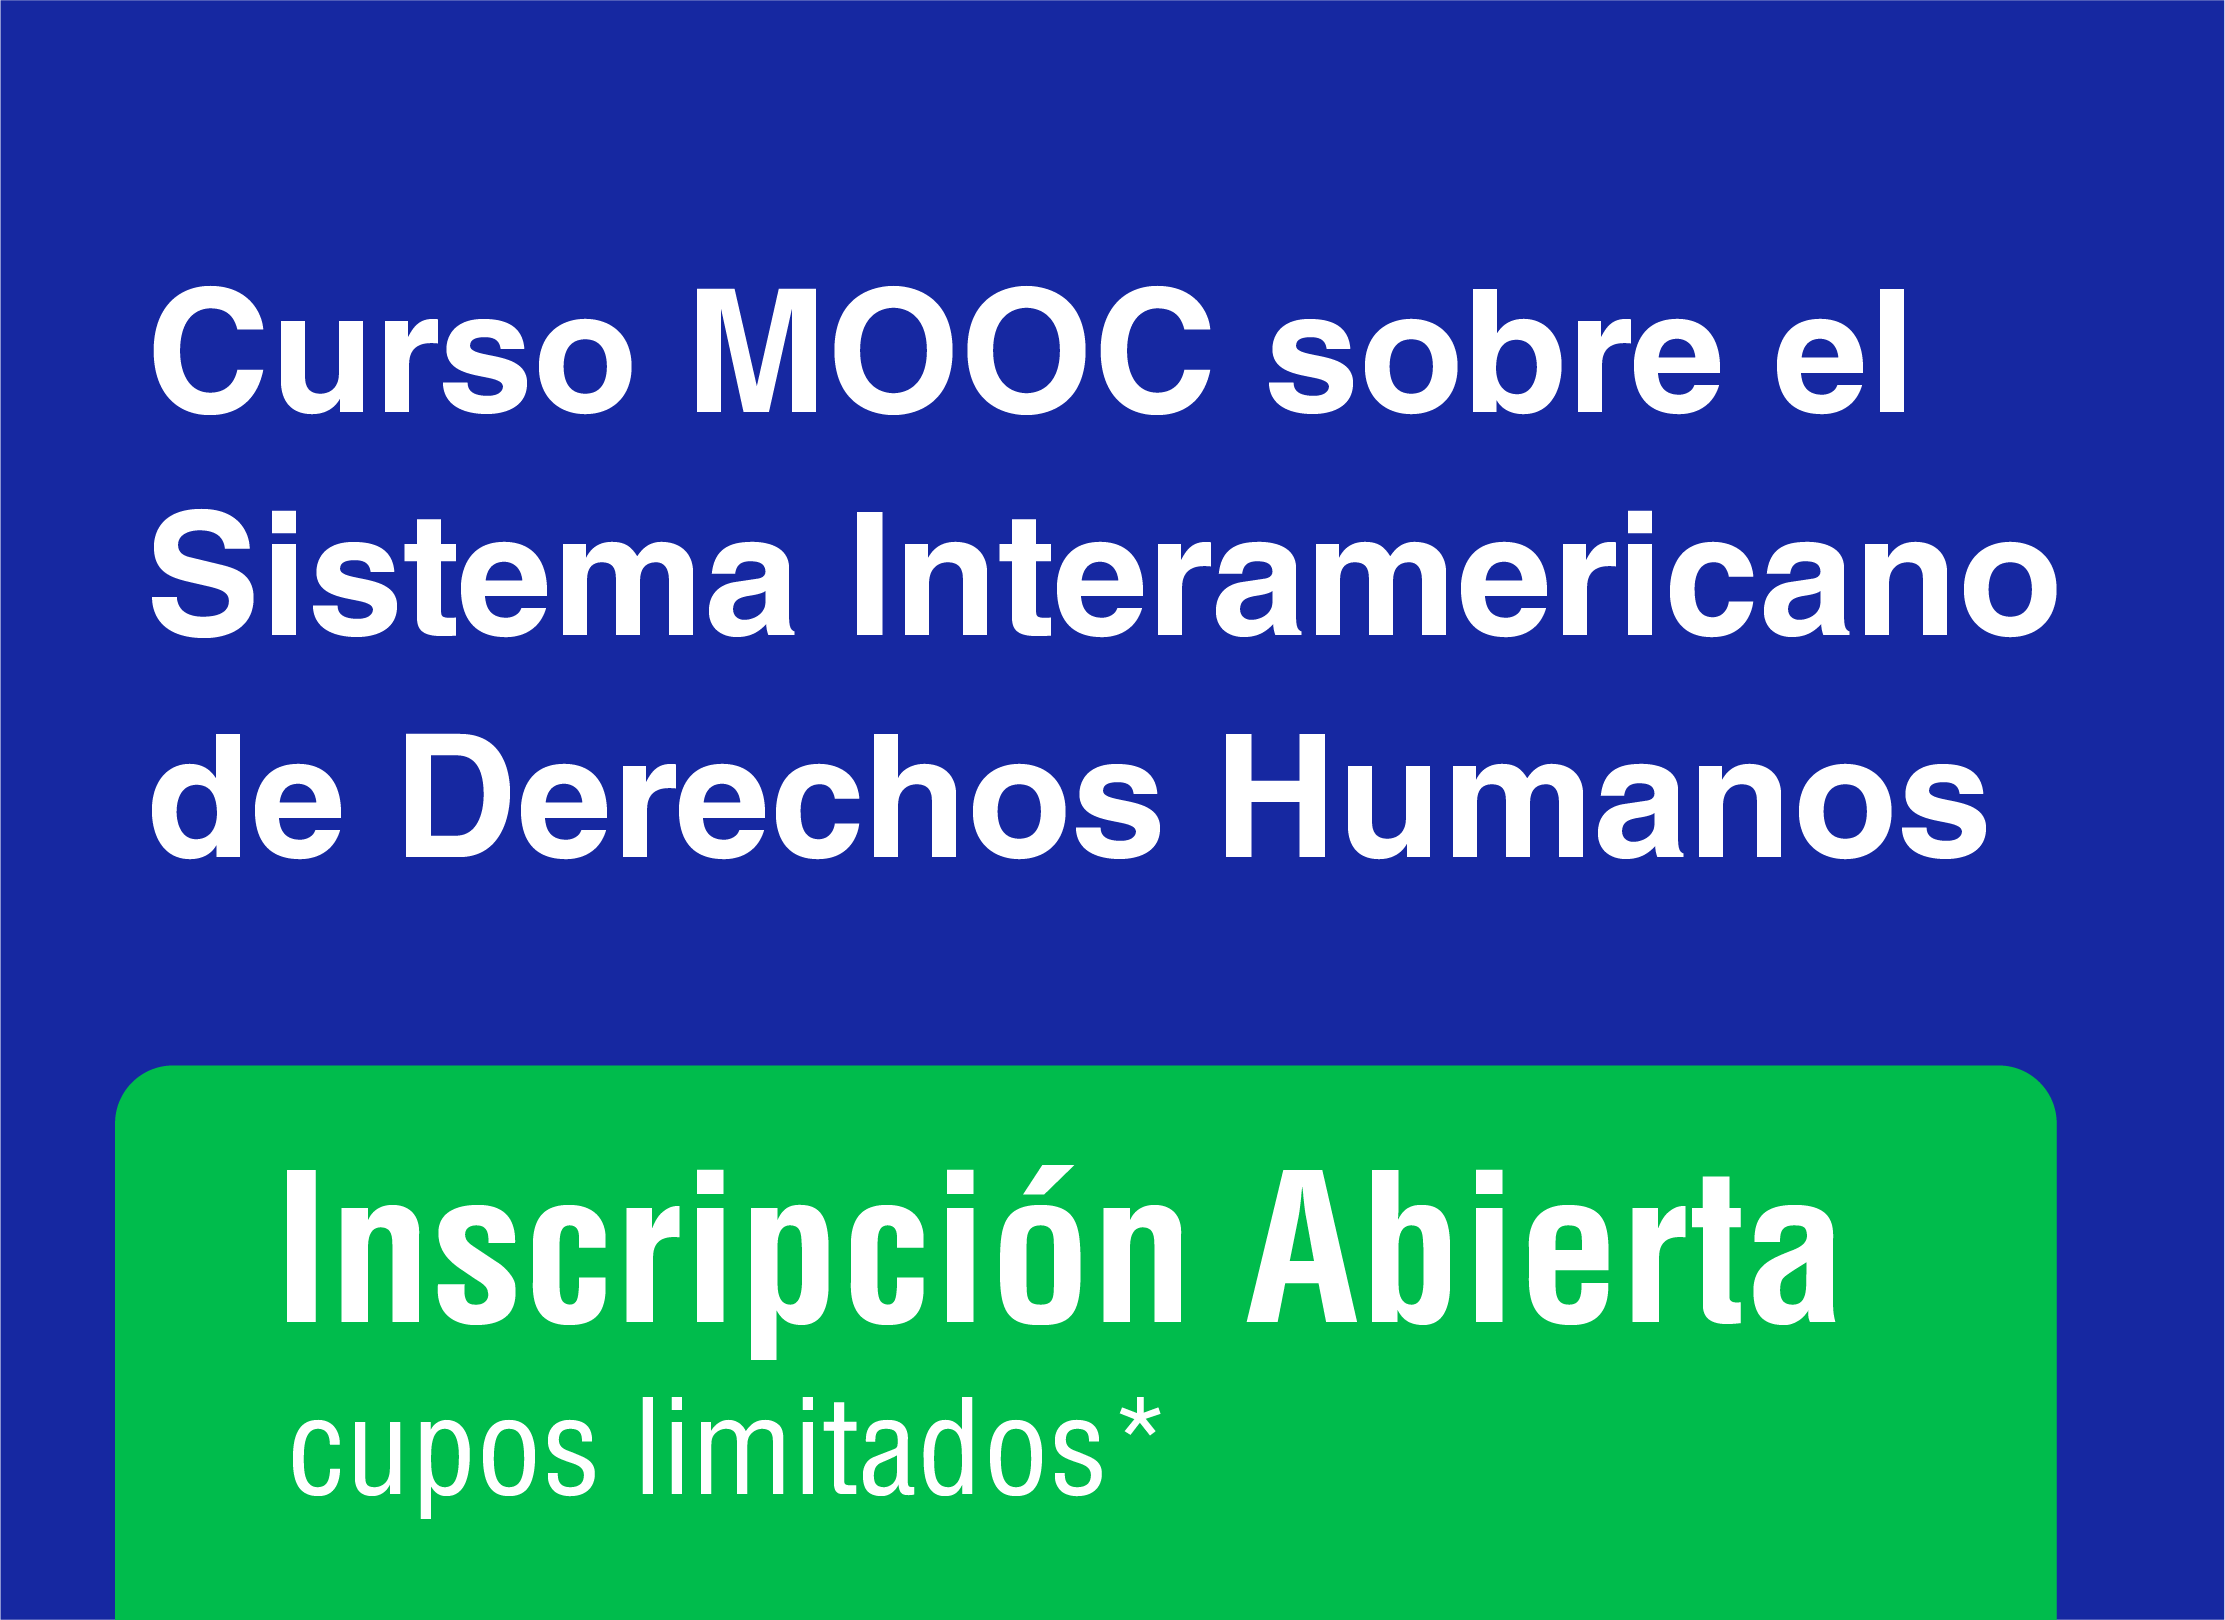 Curso MOOC sobre el Sistema Interamericano de Derechos Humanos